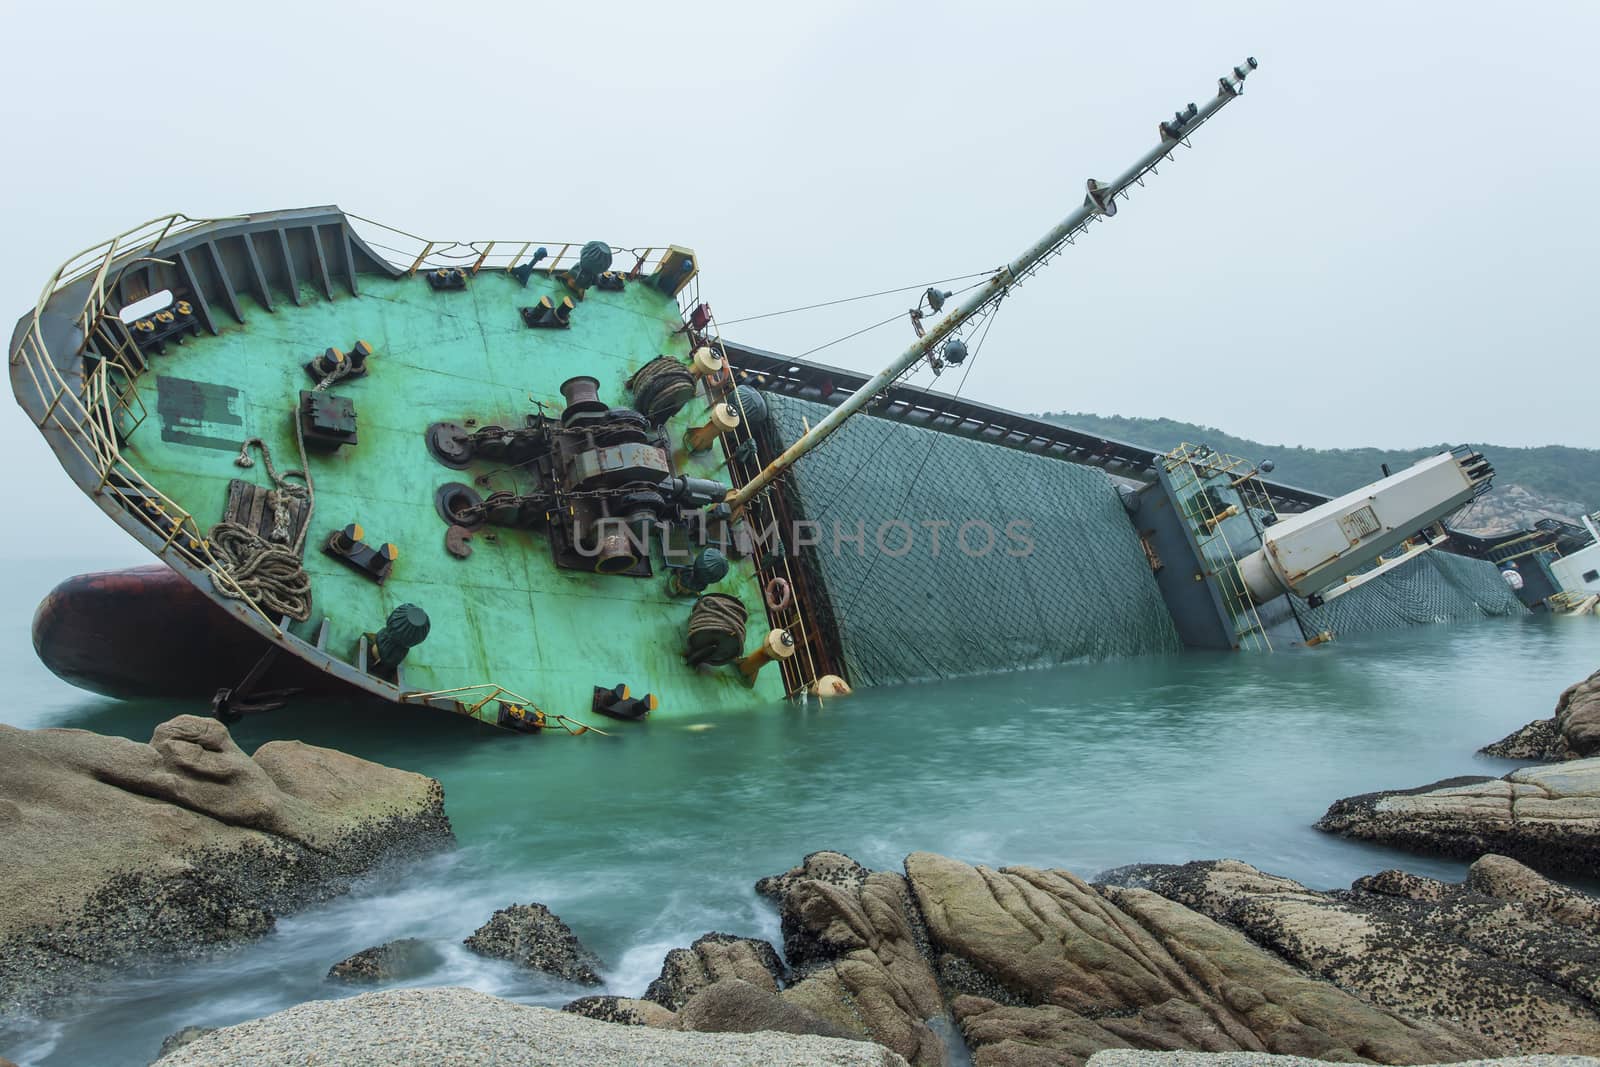 Big shipwreck by kawing921